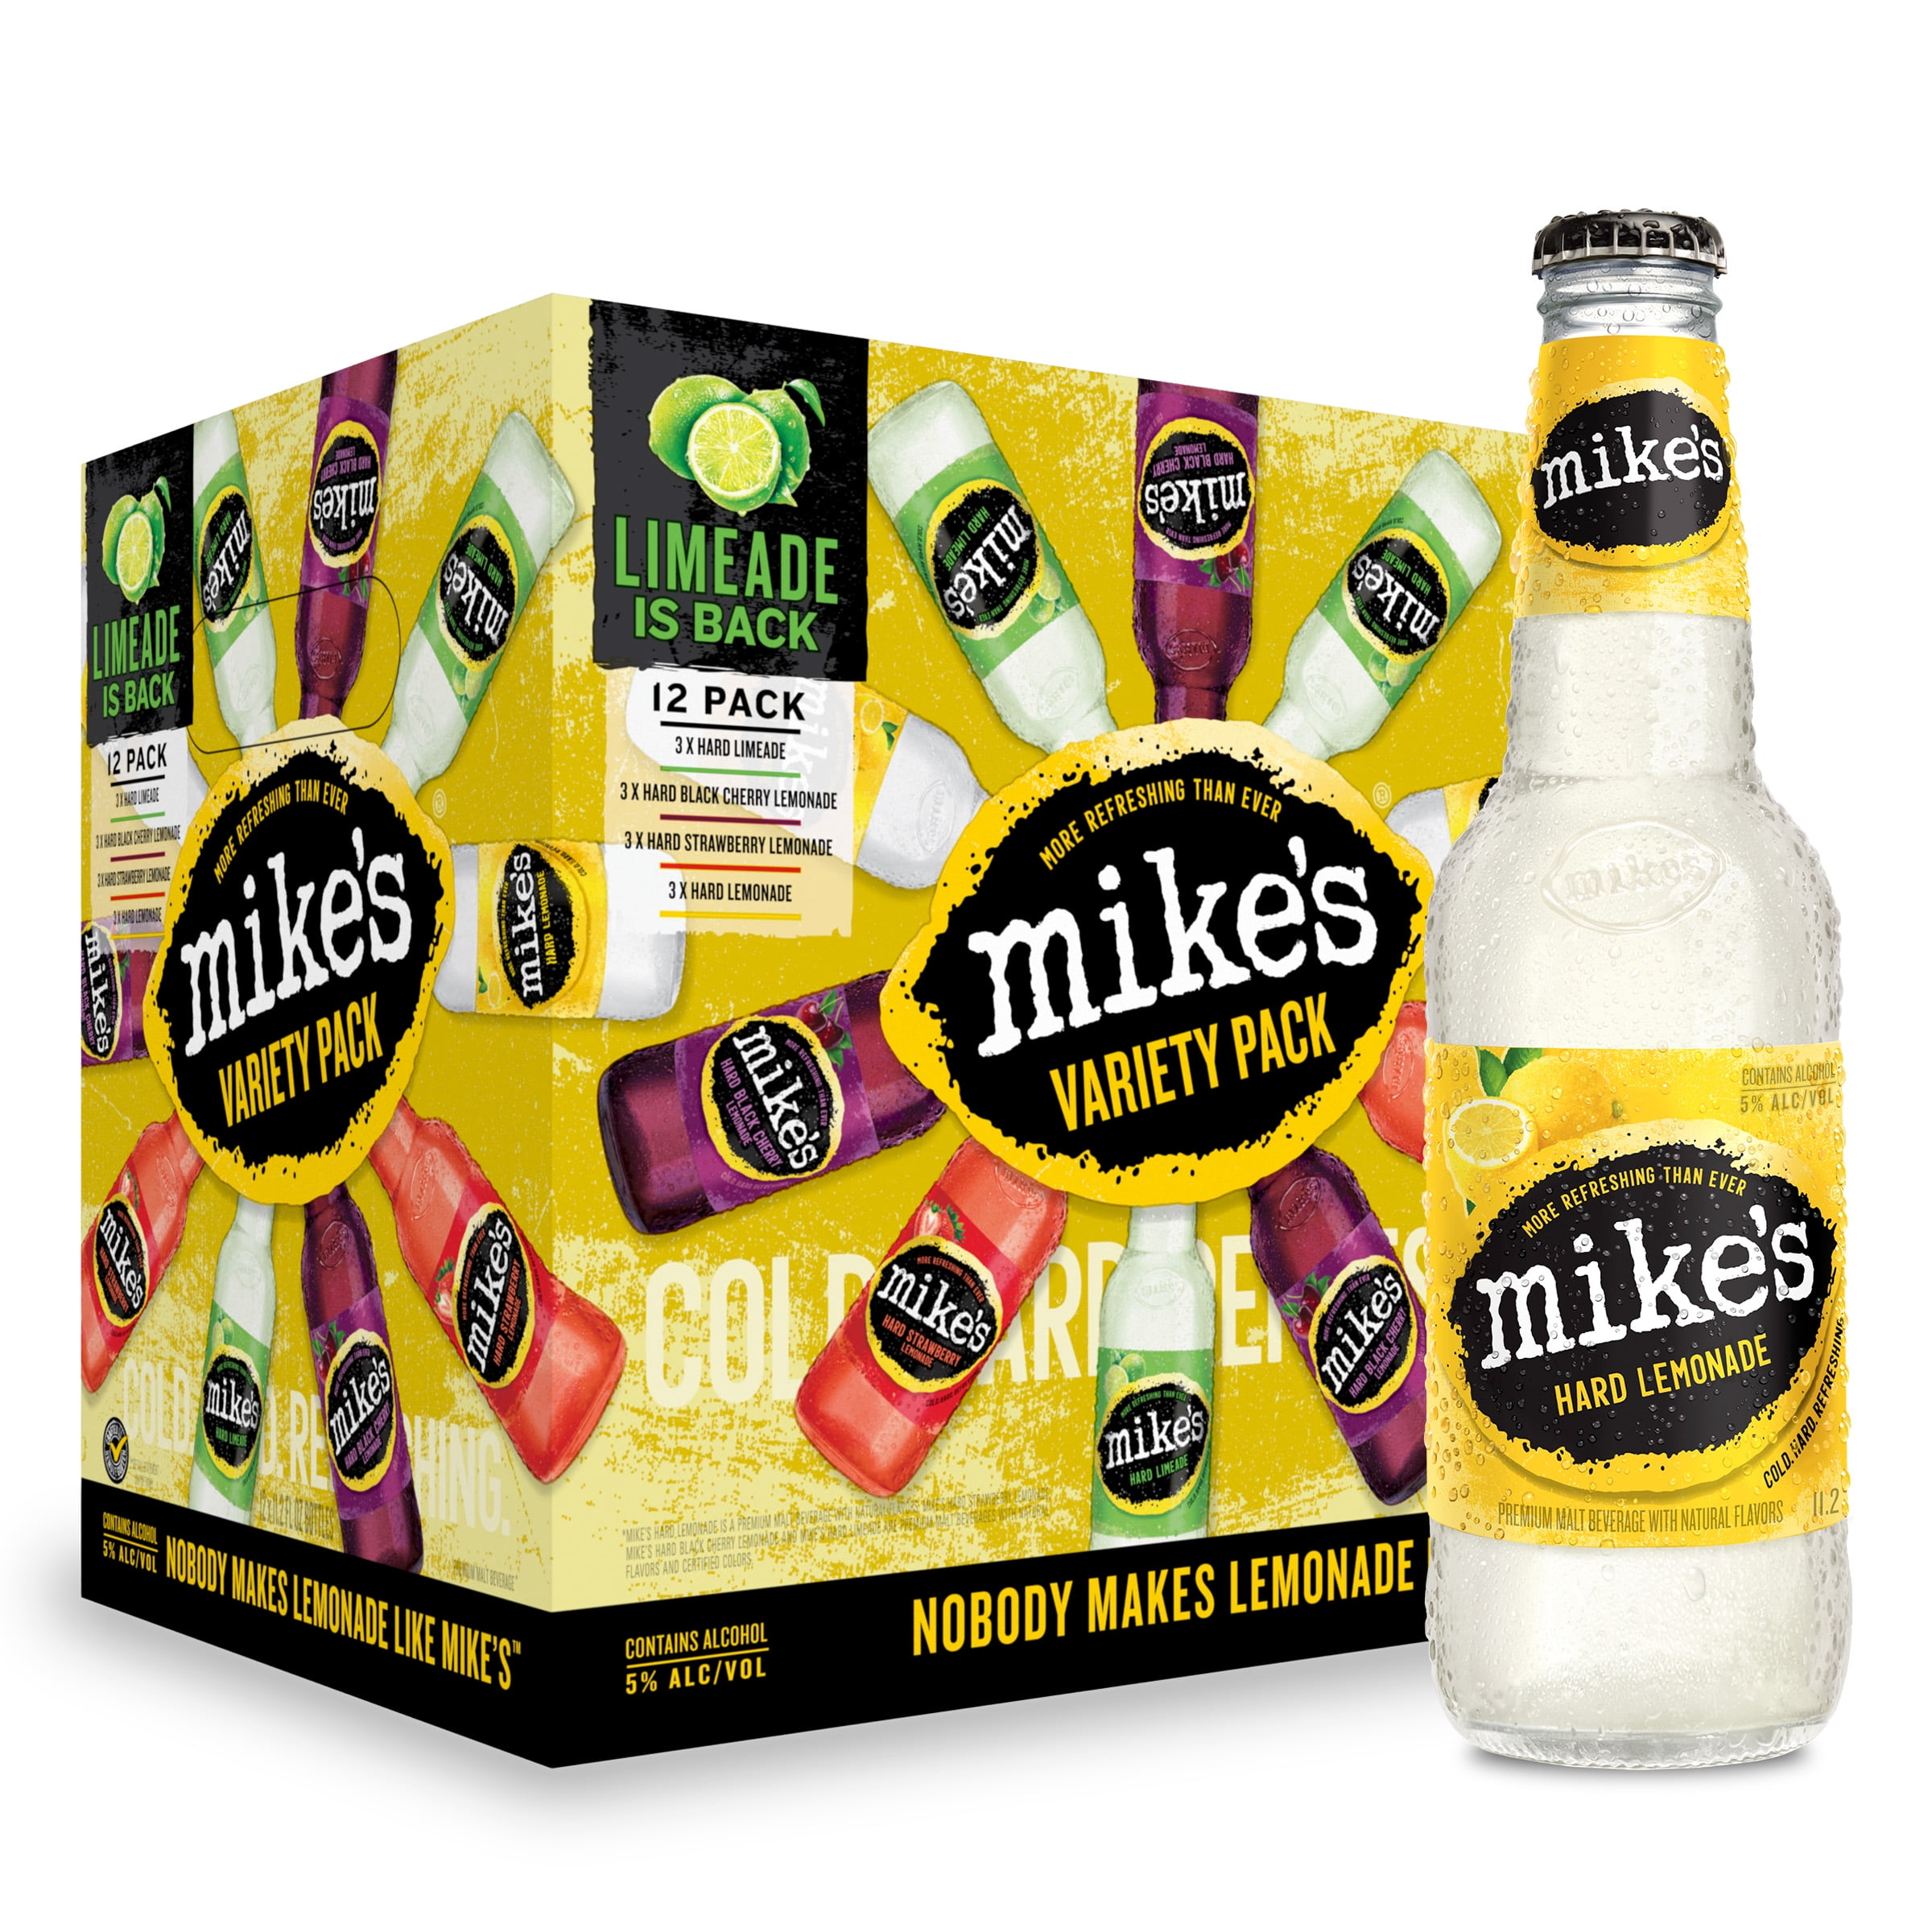 mike-s-hard-lemonade-variety-pack-12-pack-11-2-fl-oz-bottles-5-abv